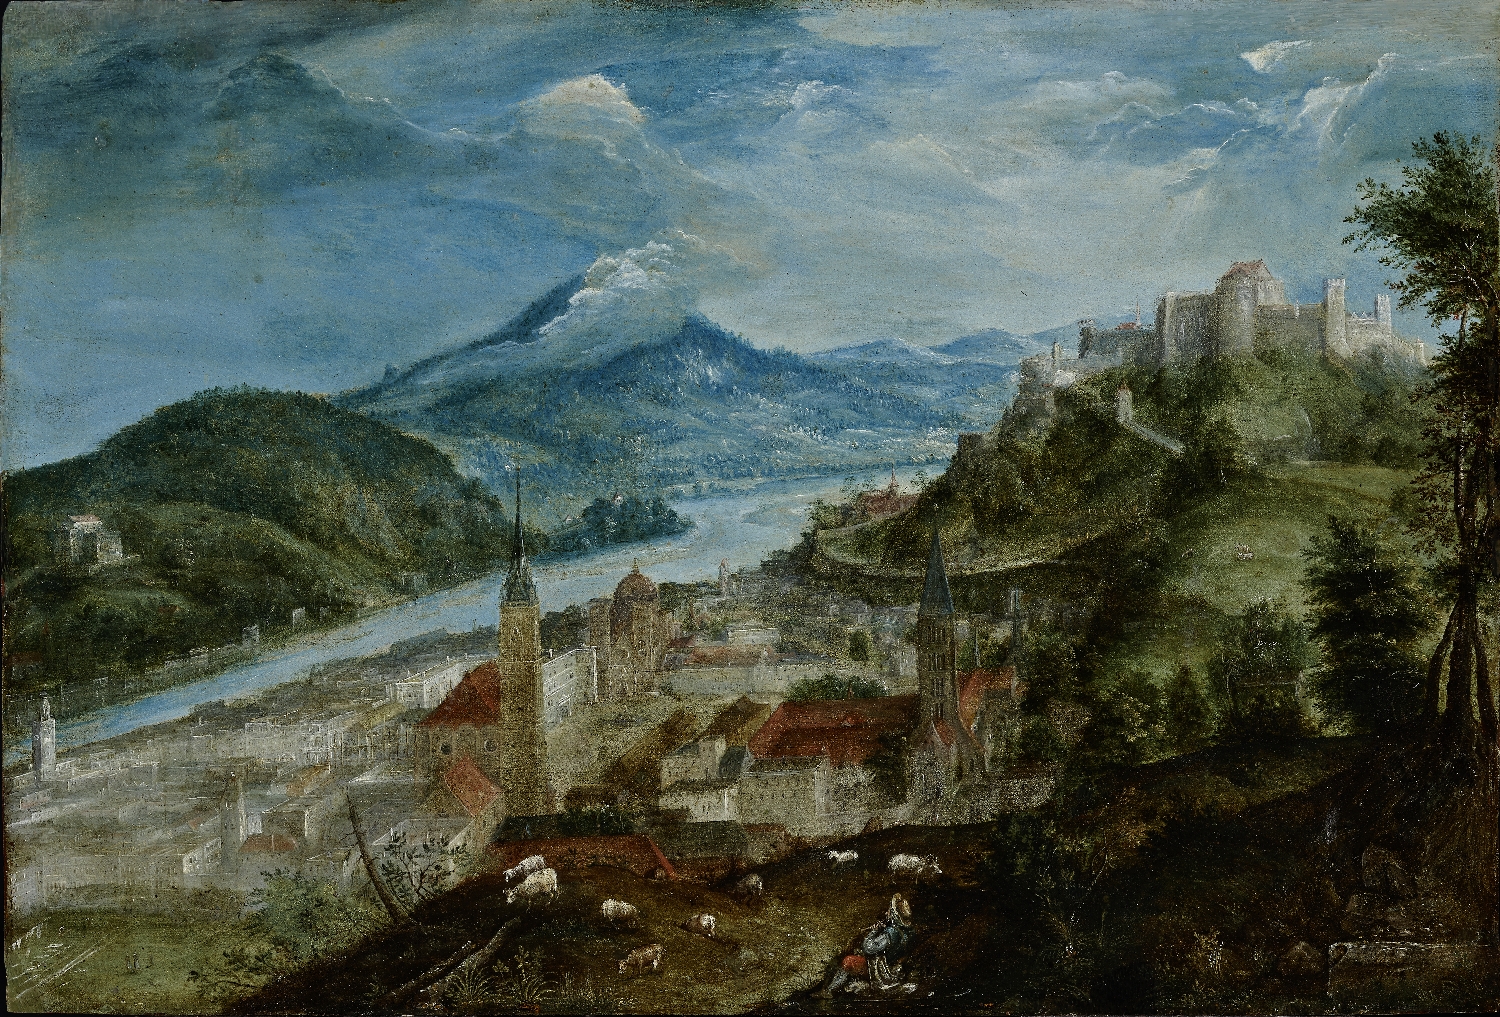 Blick auf Salzburg, Philipp van den Bossche (Bosch, Busch, Posch), 1599, Öl auf Kupferplatte, Salzburg Museum (Dauerleihgabe Salzburger Museumsverein), Inv.-Nr. 1900-2013